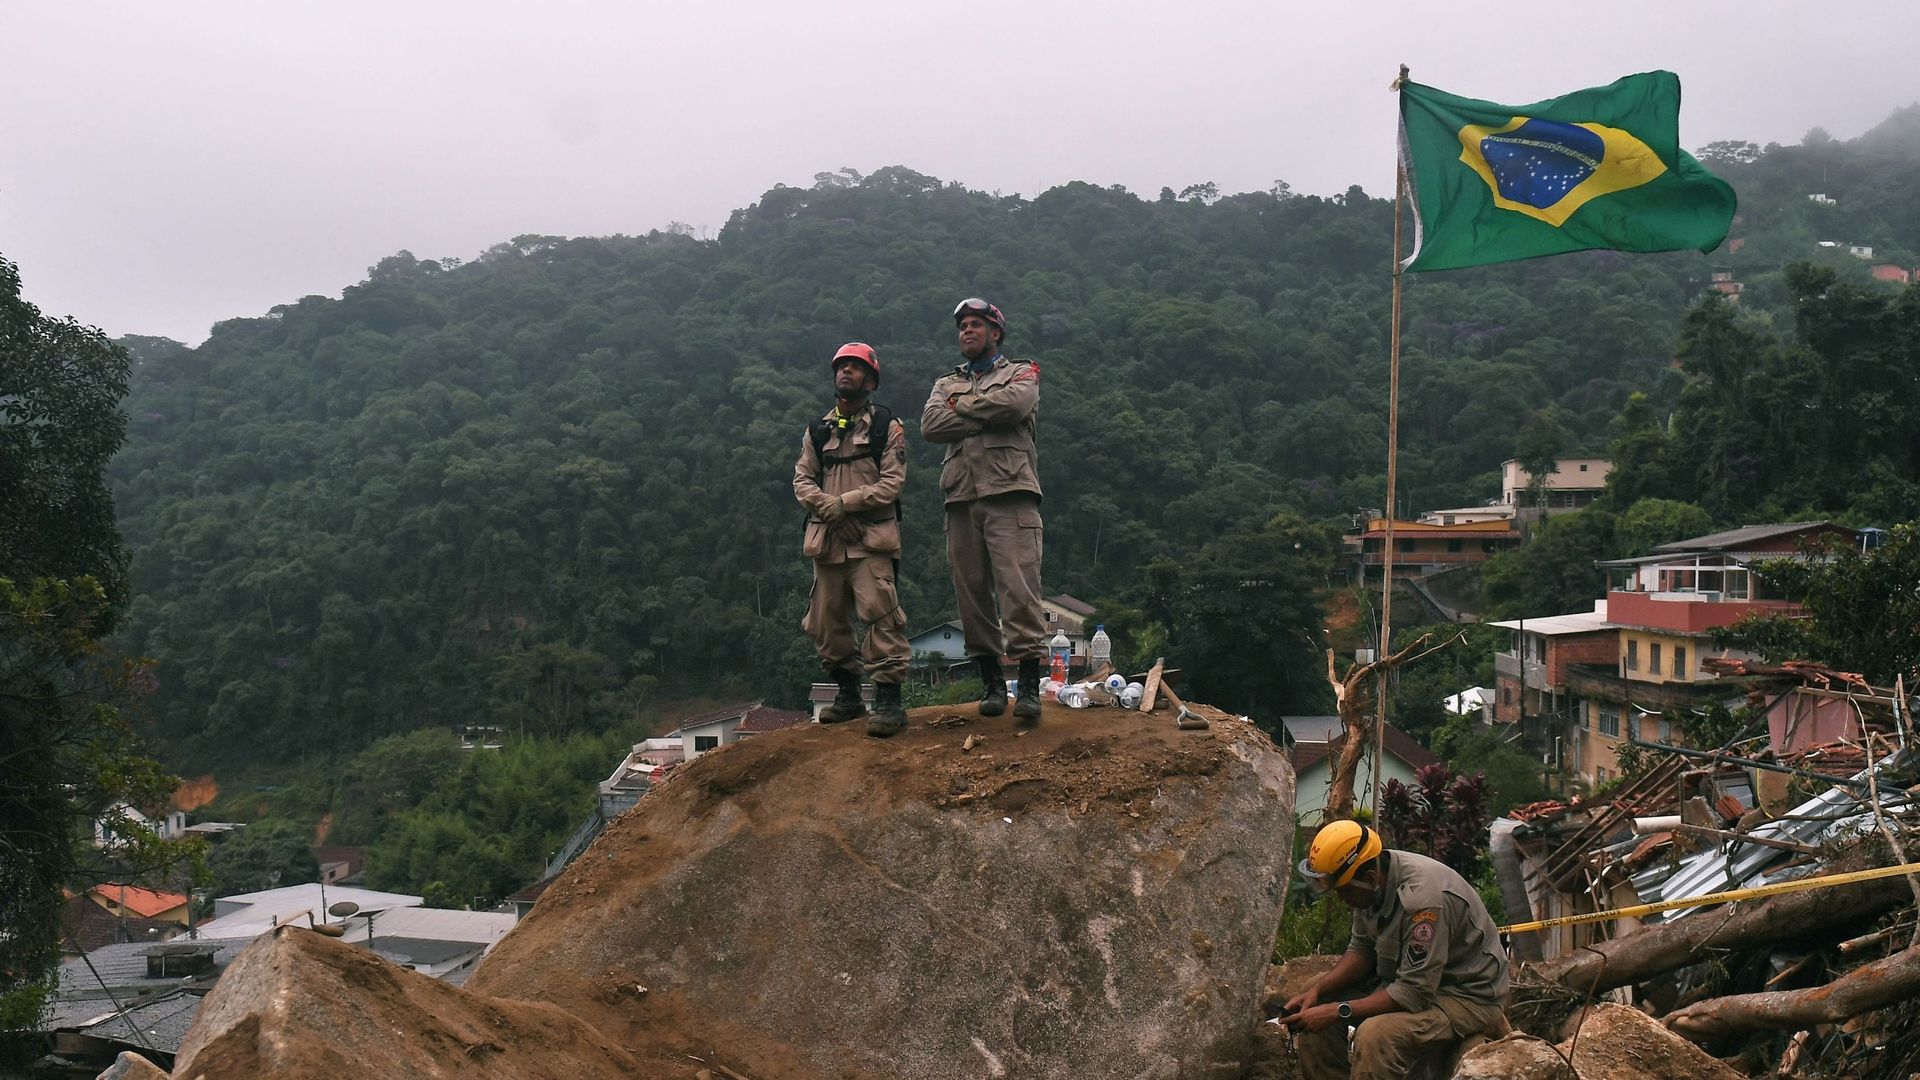 Des pompiers pendant une mission de sauvetage après un glissement de terrain géant dans le quartier de Caxambu à Petropolis, au Brésil, le 19 février 2022.
